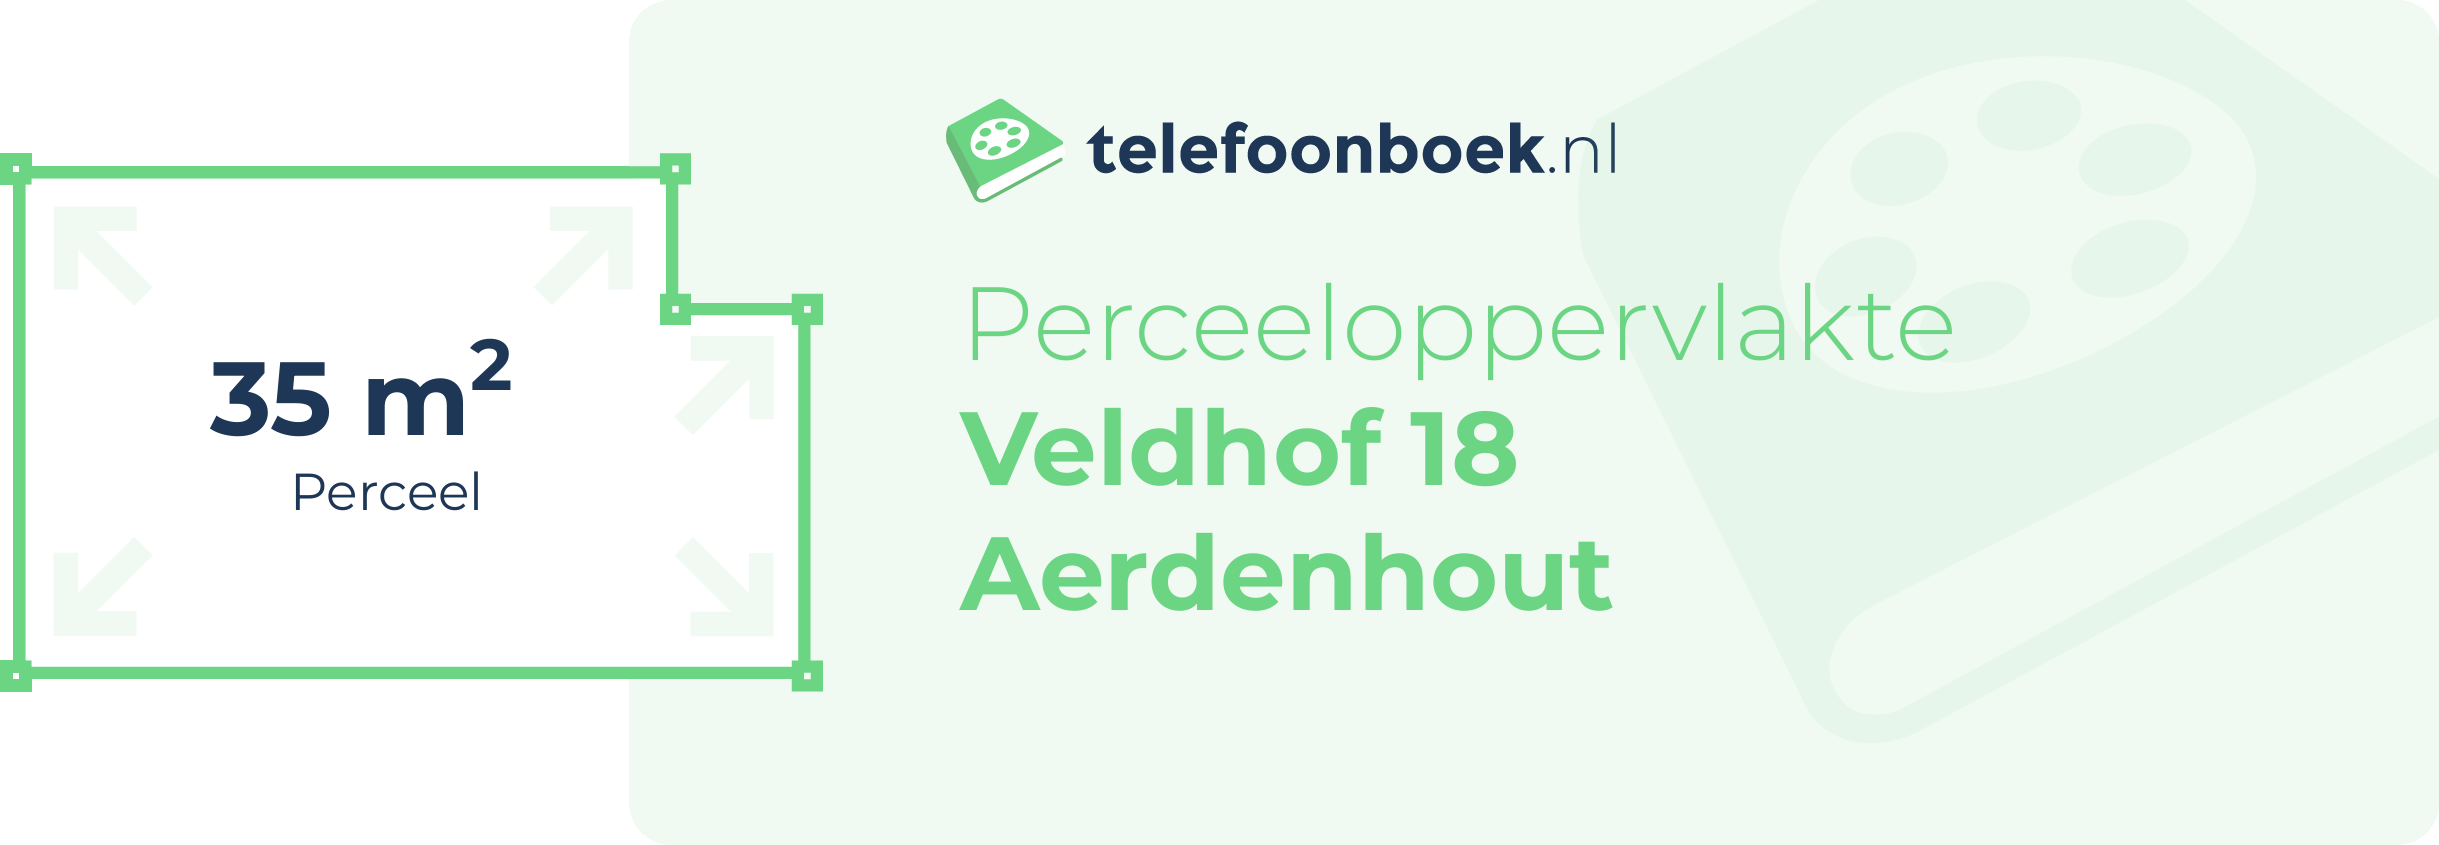 Perceeloppervlakte Veldhof 18 Aerdenhout